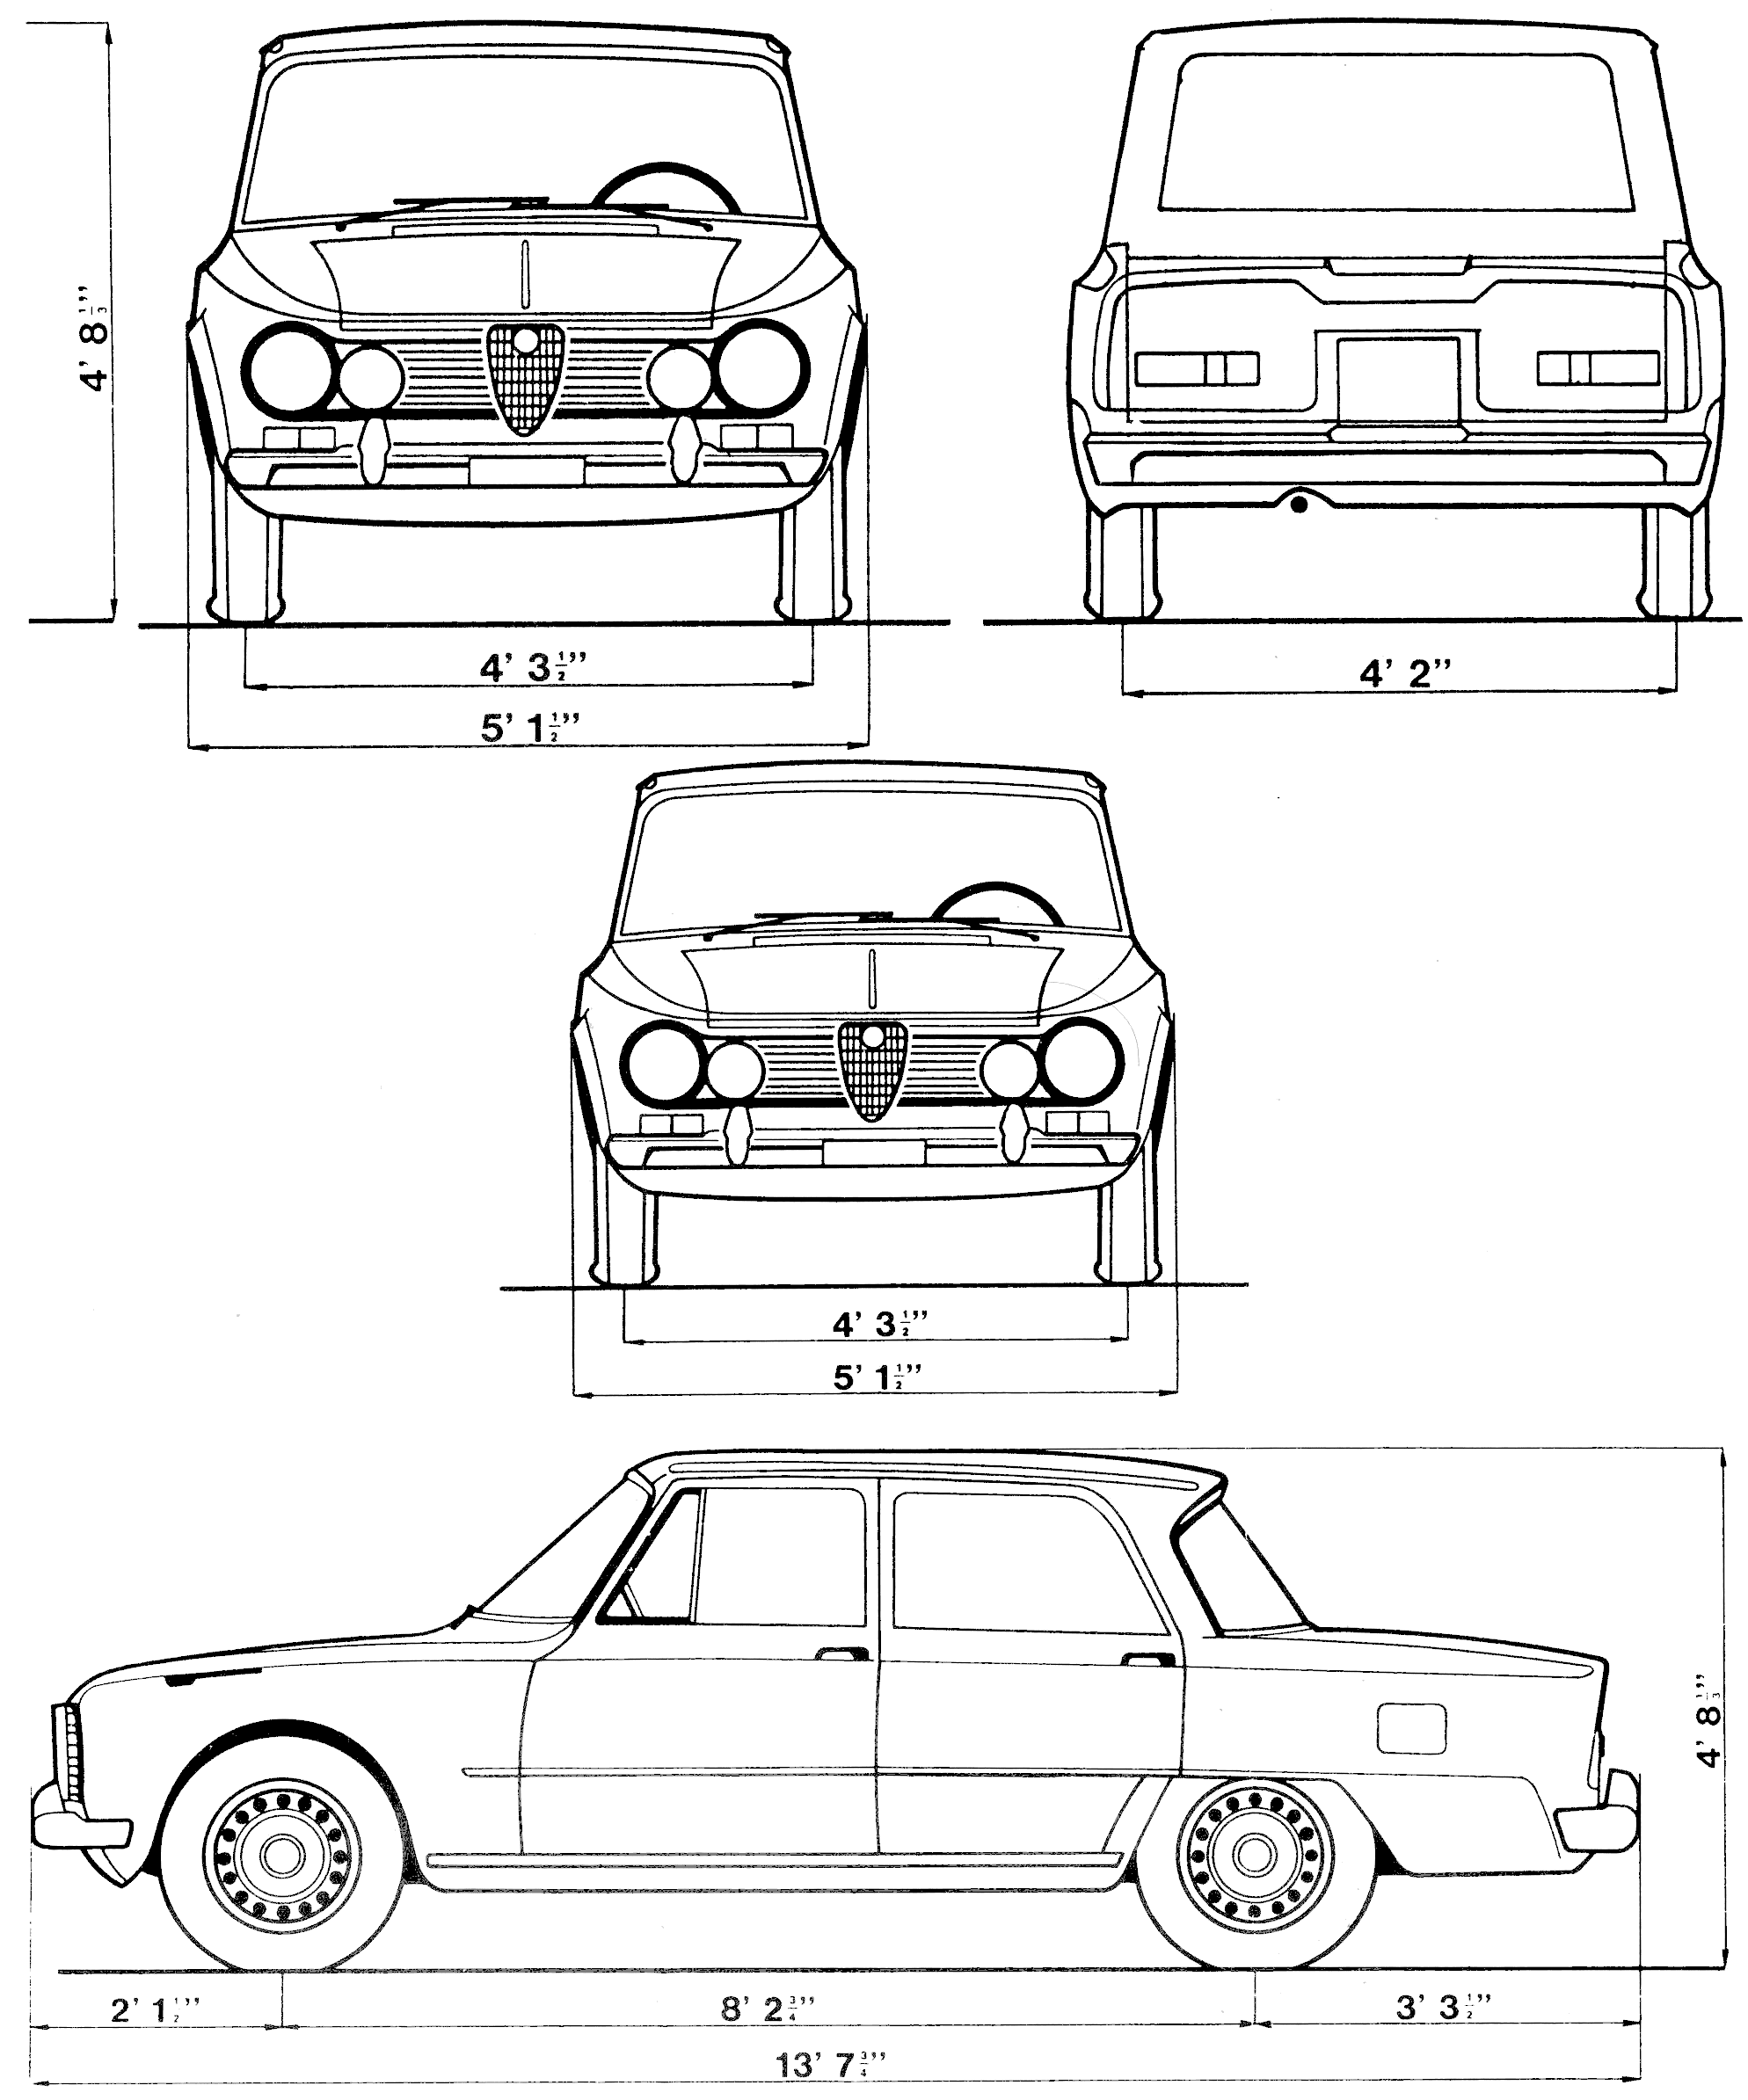 Alfa Romeo Giulia blueprint